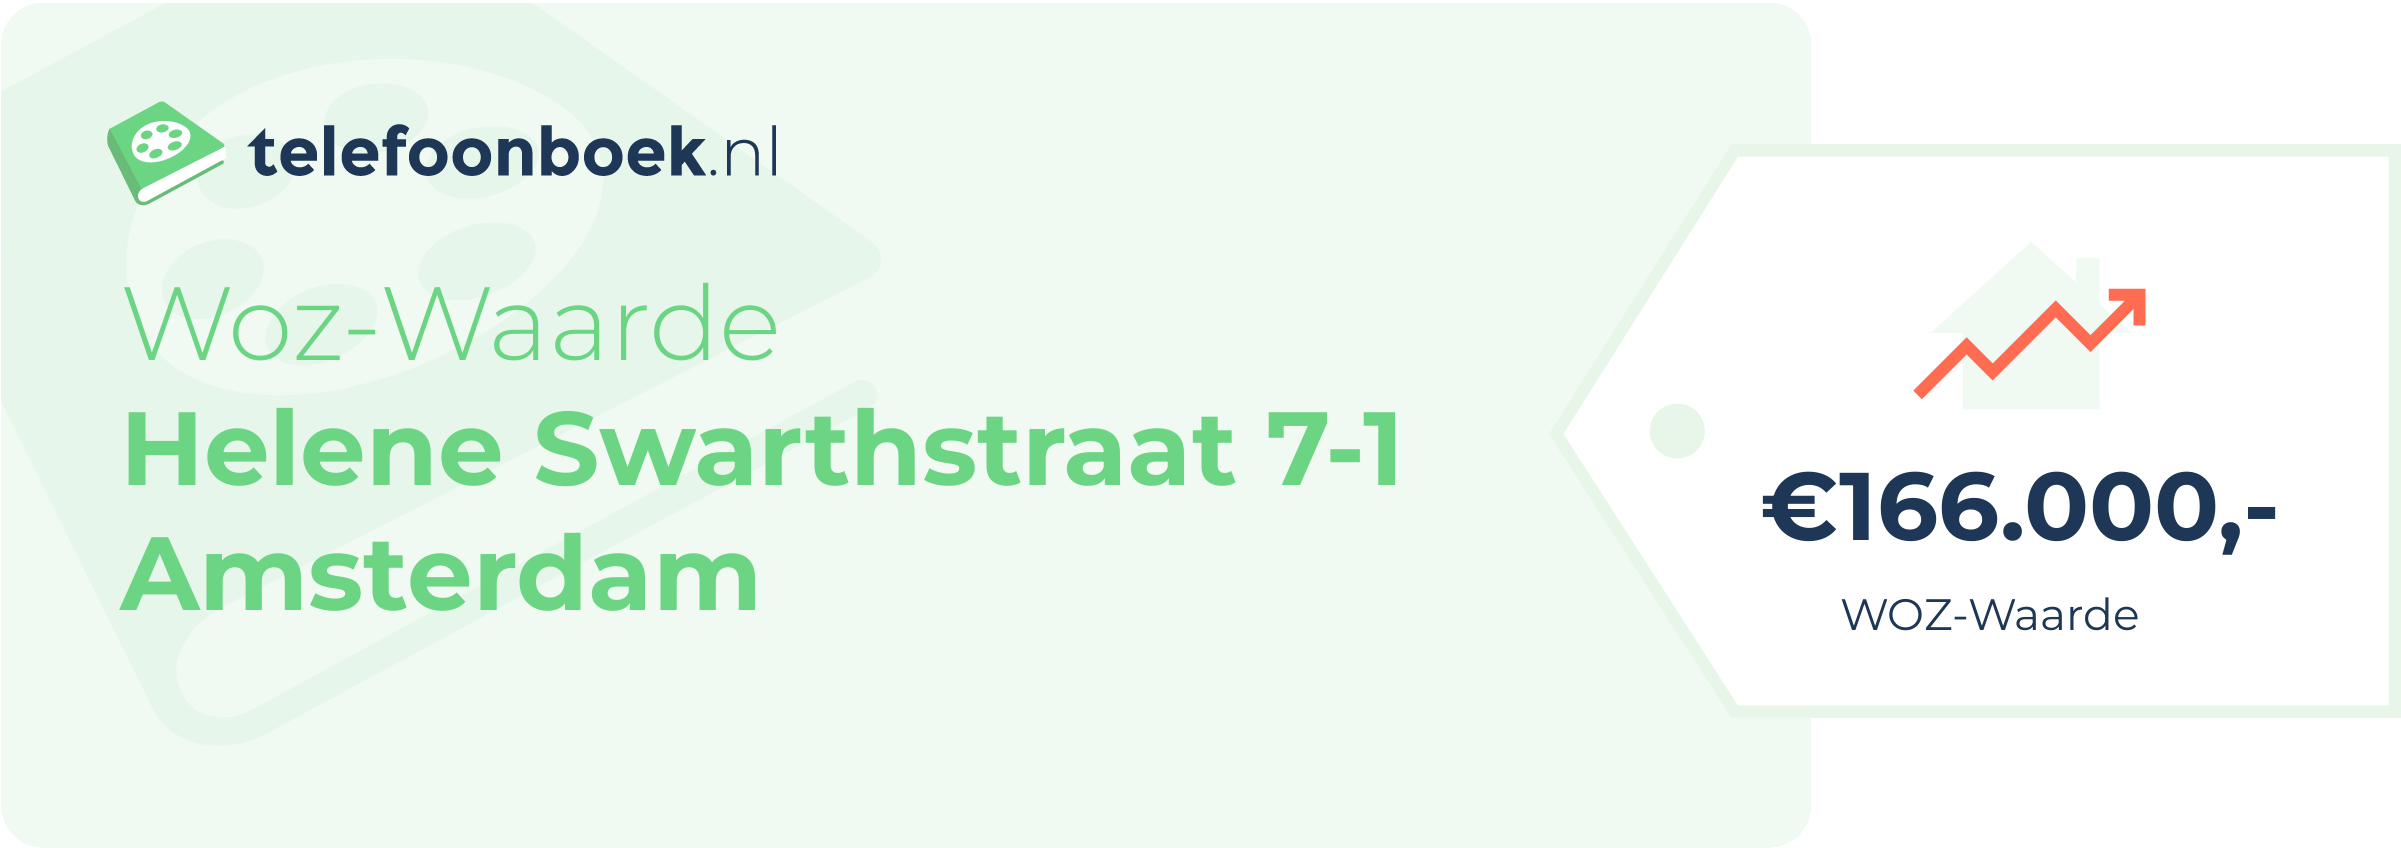 WOZ-waarde Helene Swarthstraat 7-1 Amsterdam